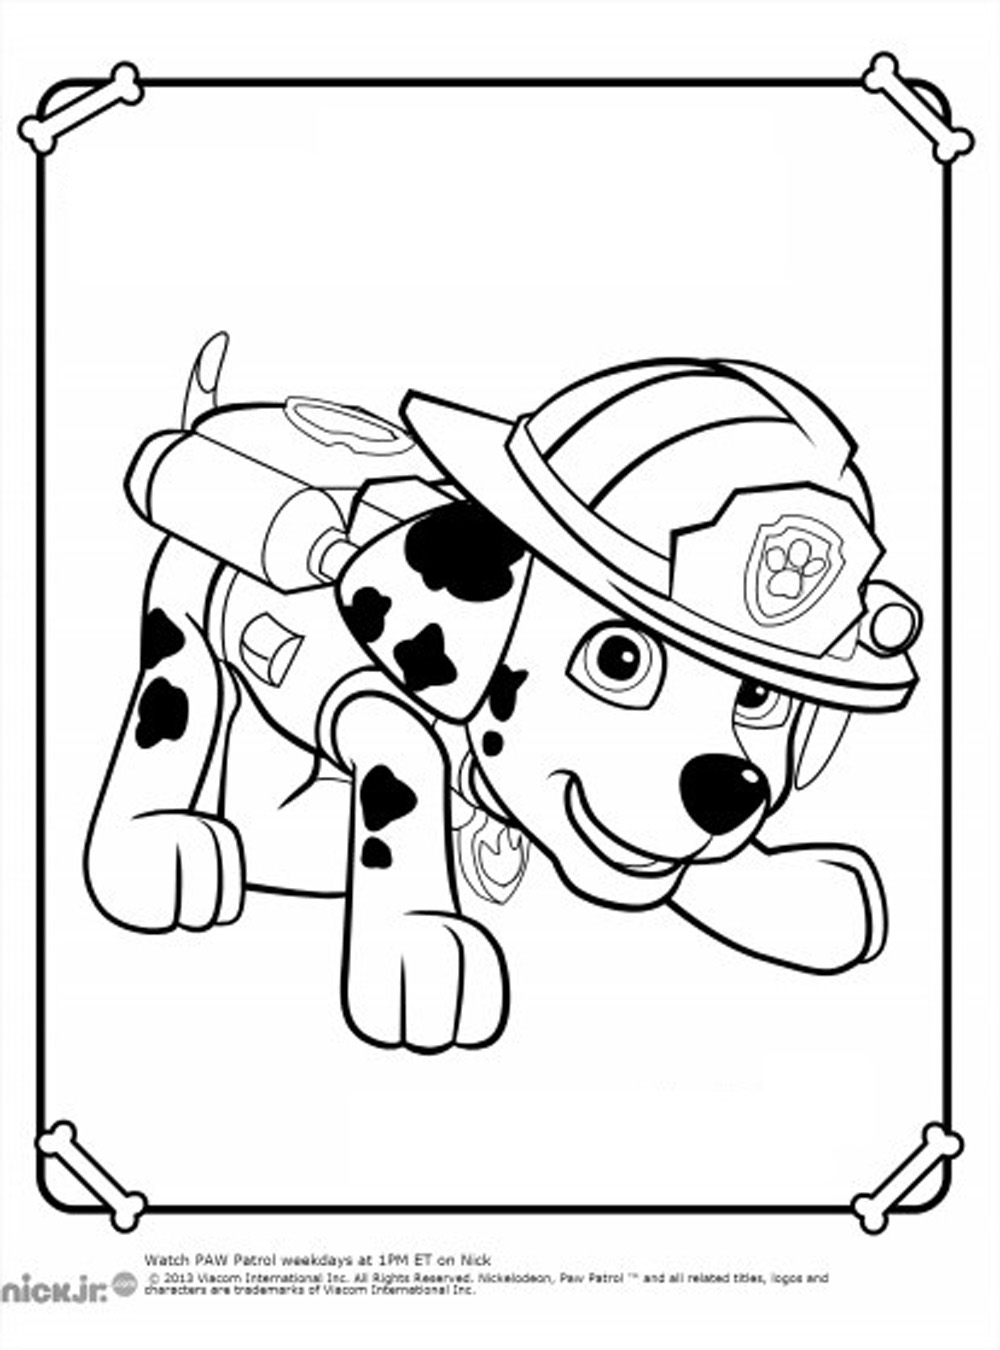 PAW Patrol páginas para colorear, Patrulla de cachorros gratis para colorear  - PAW Patrol, Patrulla de cachorros - Just Color Niños : Dibujos para  colorear para niños